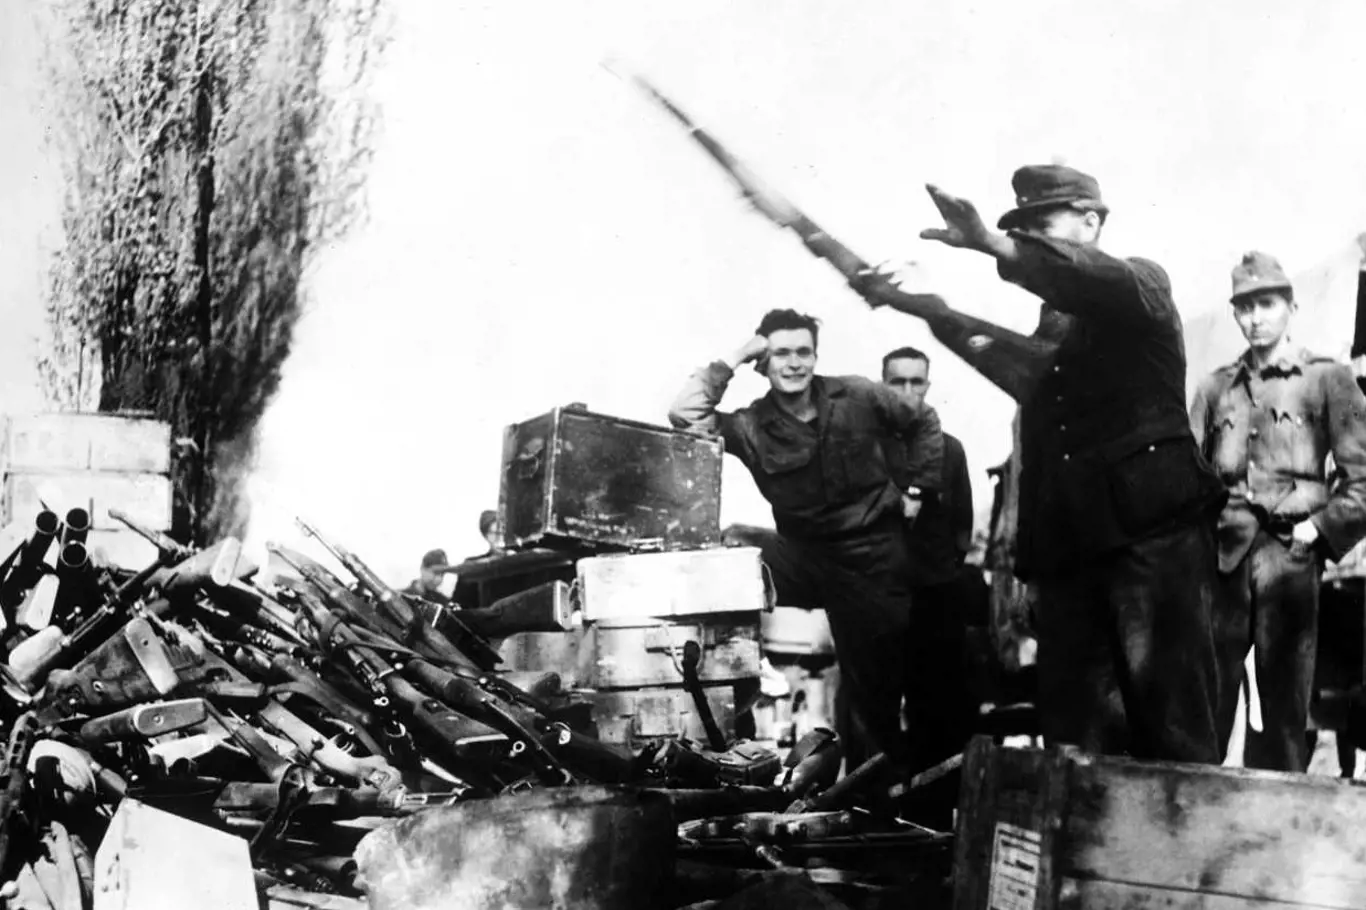 Pražské povstání – Na začátku povstání měli povstalci málo zbraní, ale díky některým německým jednotkám, které neviděly důvod k boji, získali potřebné pušky a samopaly k boji s fanatickými nacisty.